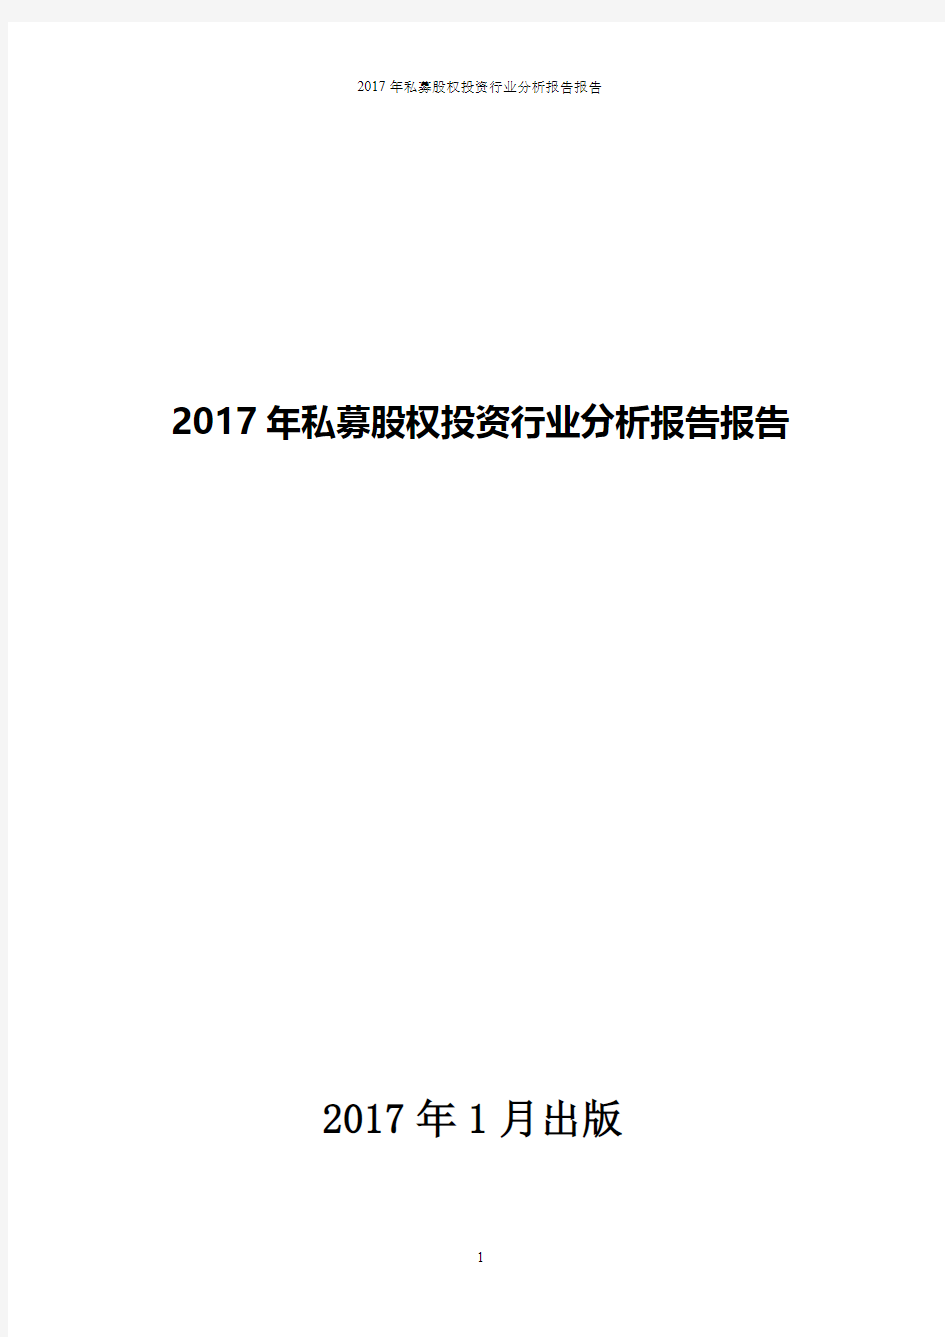 2017年私募股权投资行业分析报告报告(pdf版本)